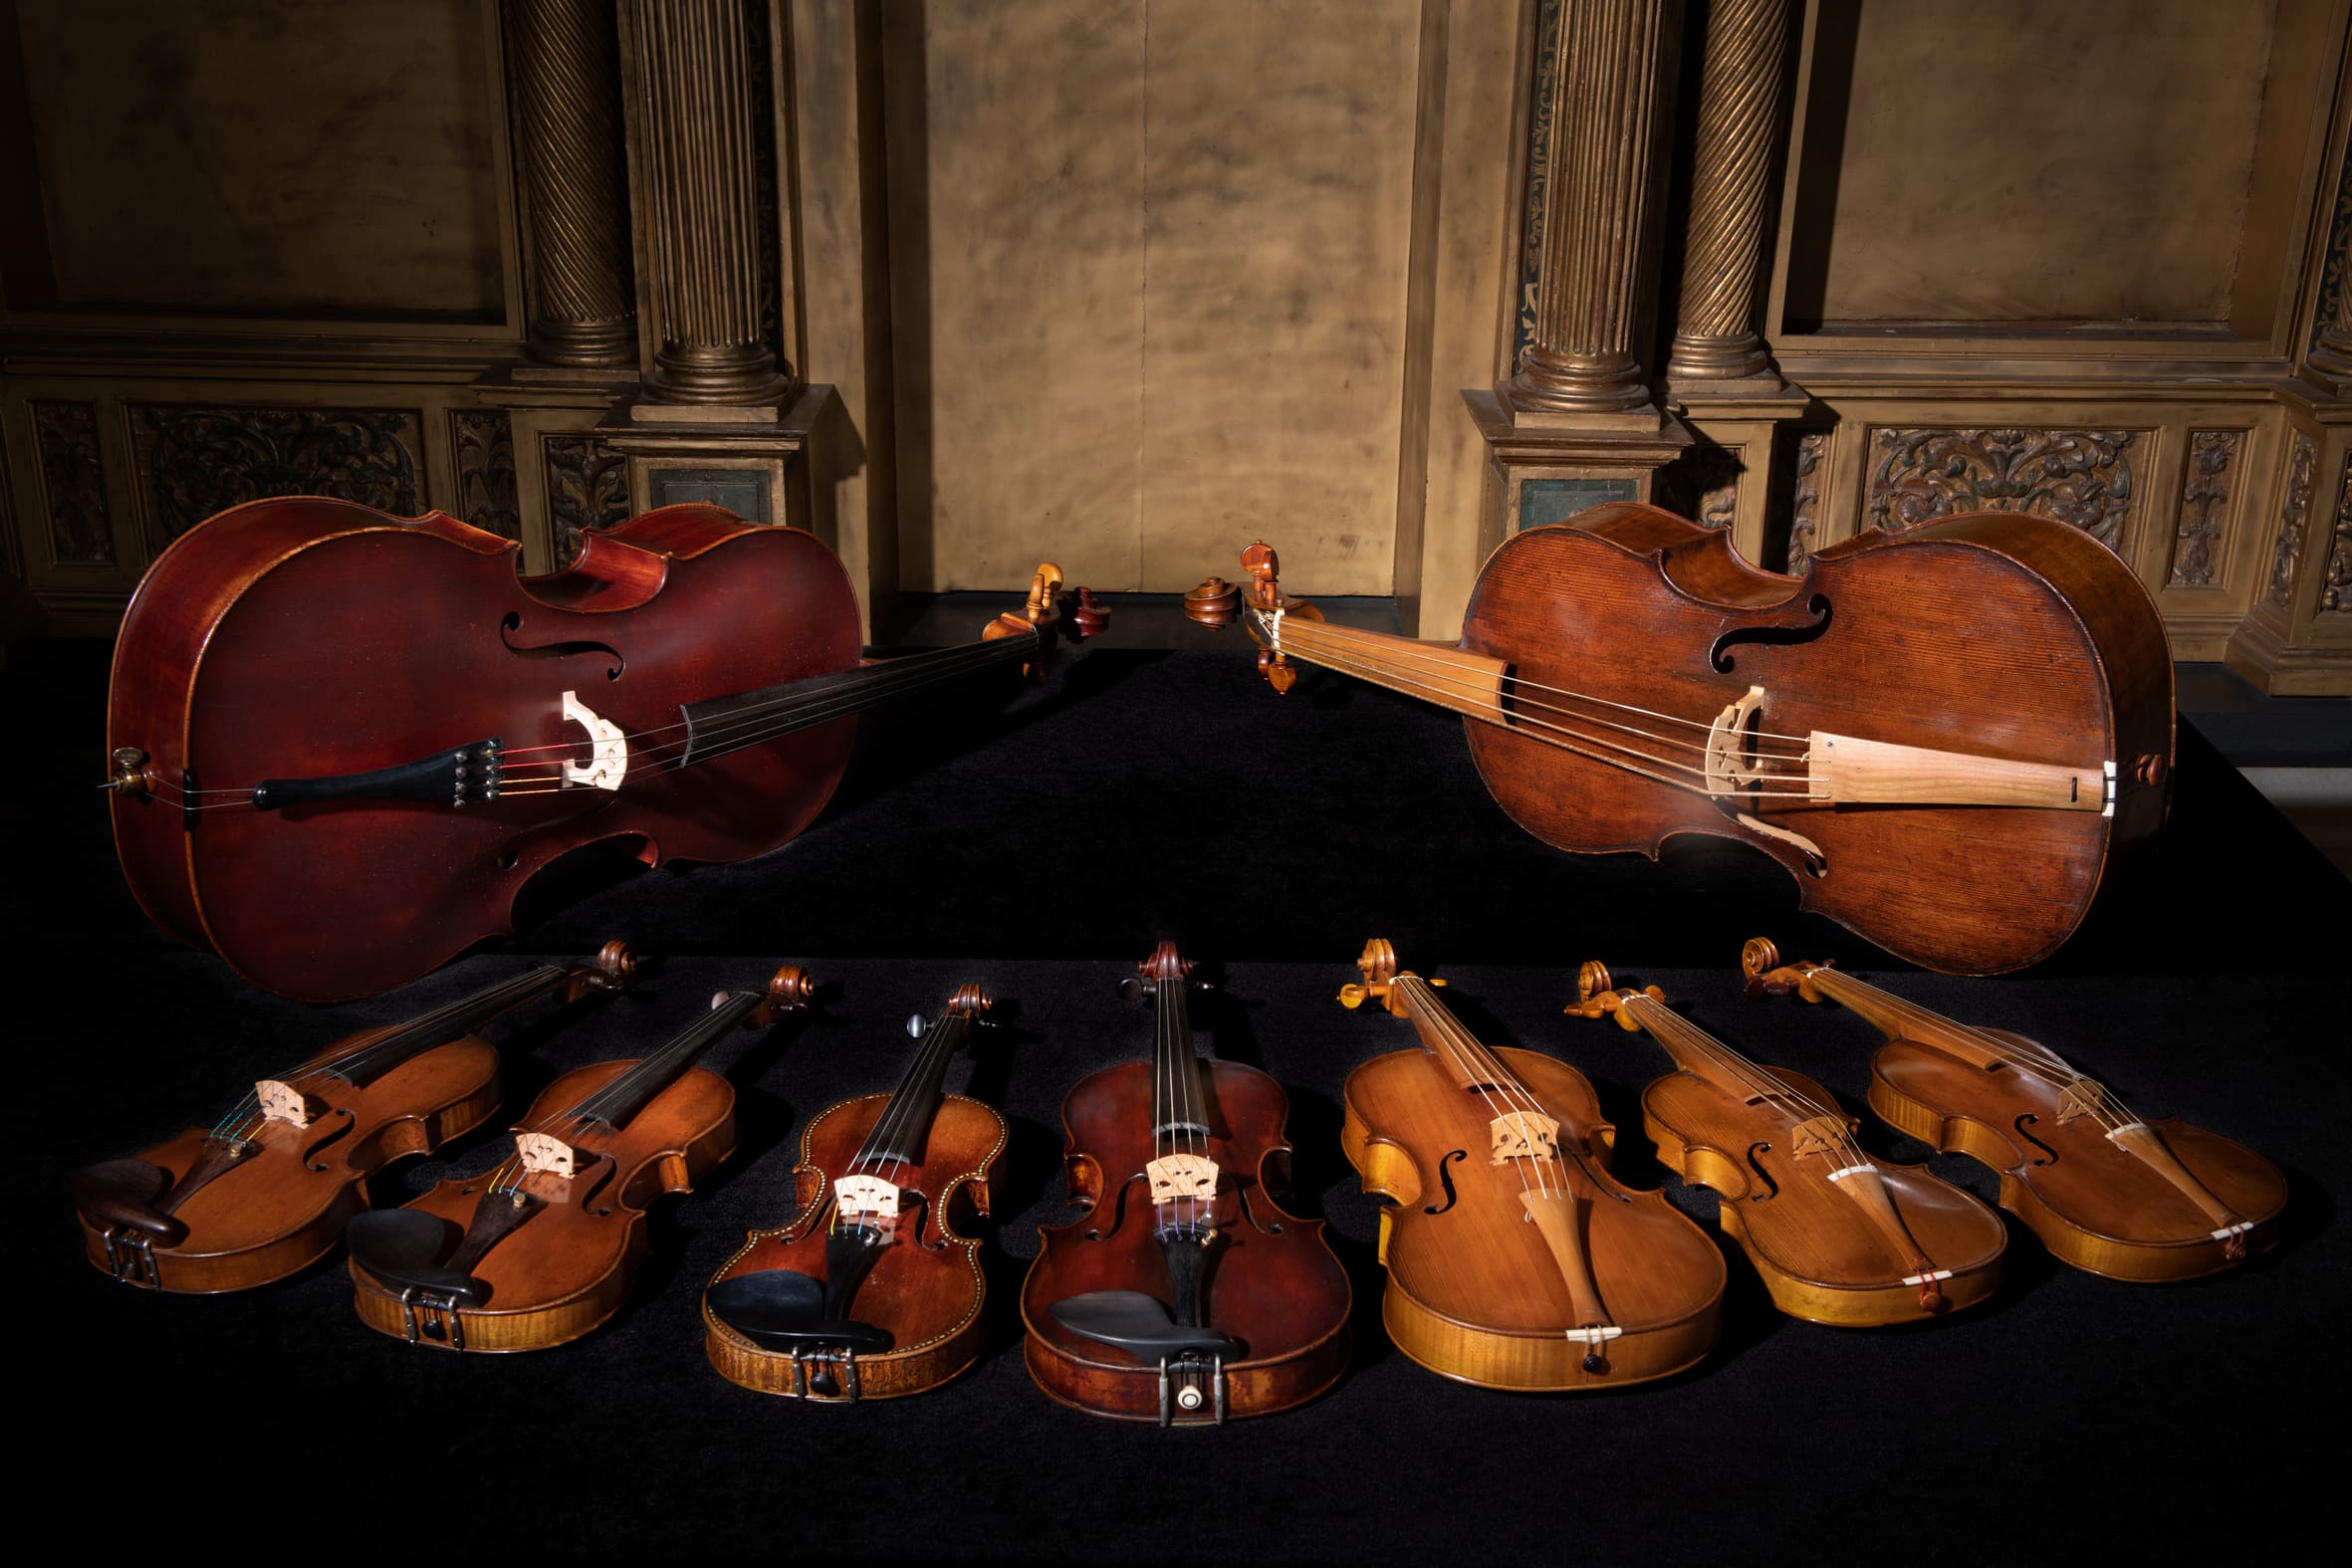 奇美提琴音樂饗宴「英格蘭的瑰麗輝煌琴音」集結9把英格蘭世紀名琴輪番演出。 (1)